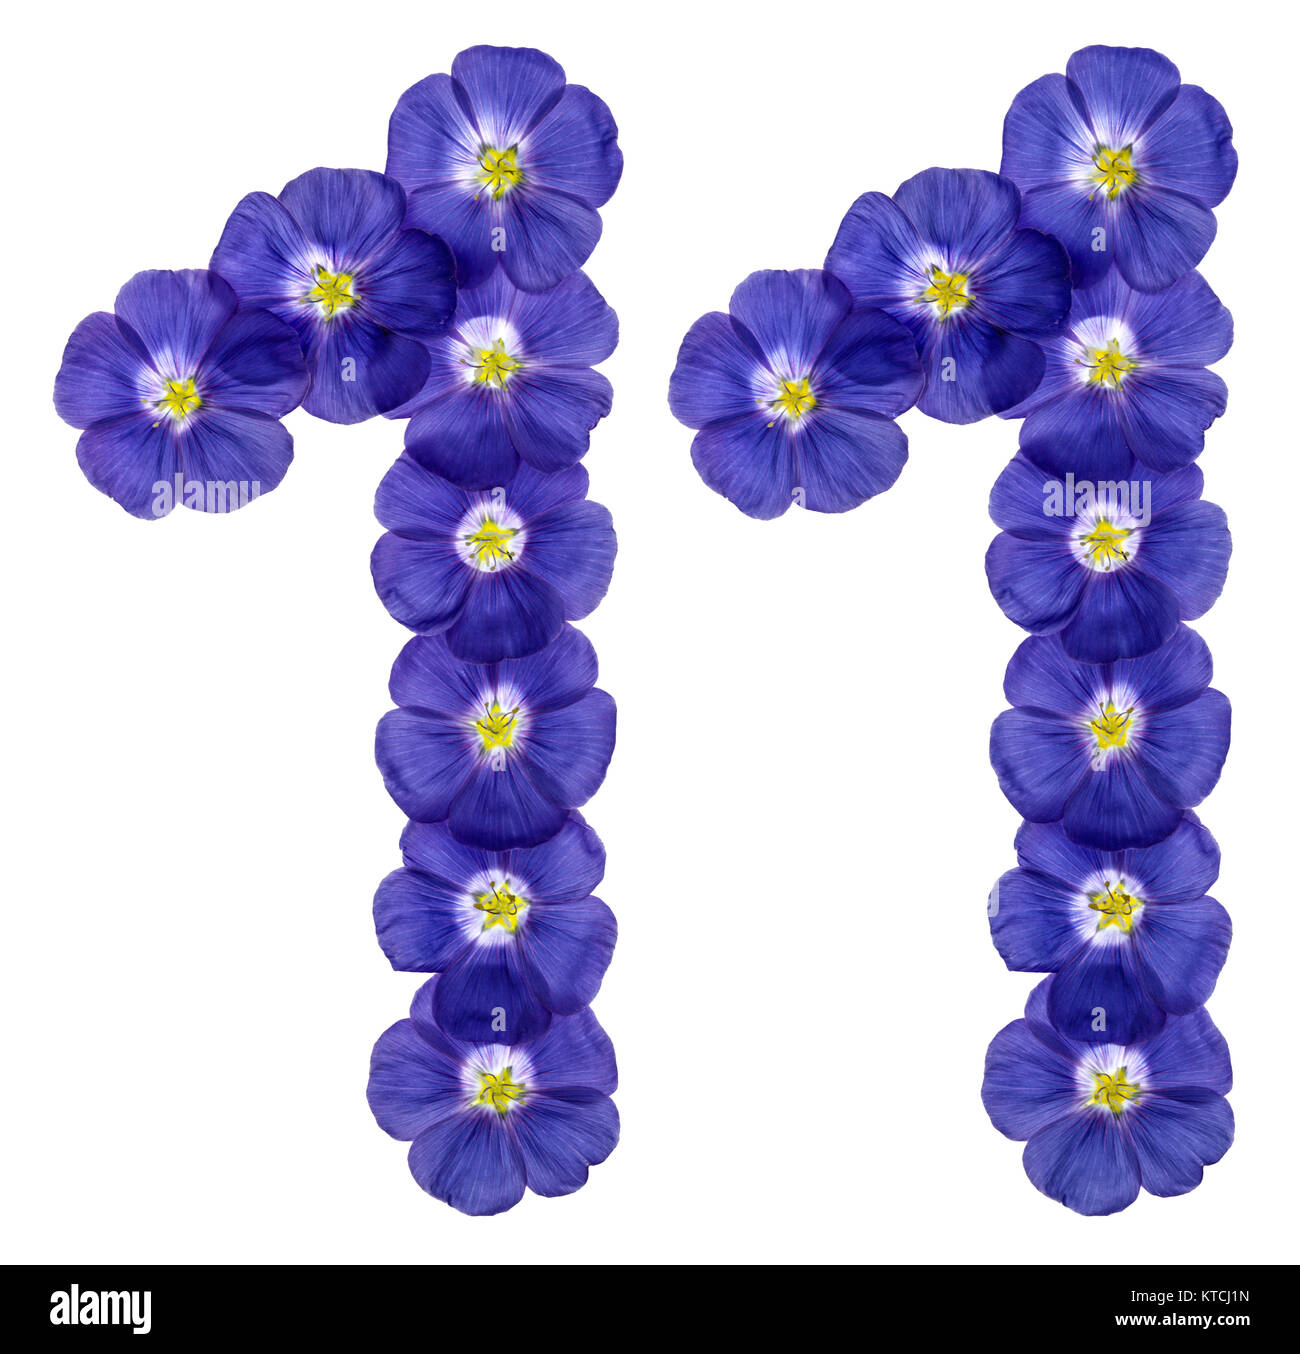 Numero arabo 11, undici, dai fiori blu di lino, isolato su sfondo bianco Foto Stock